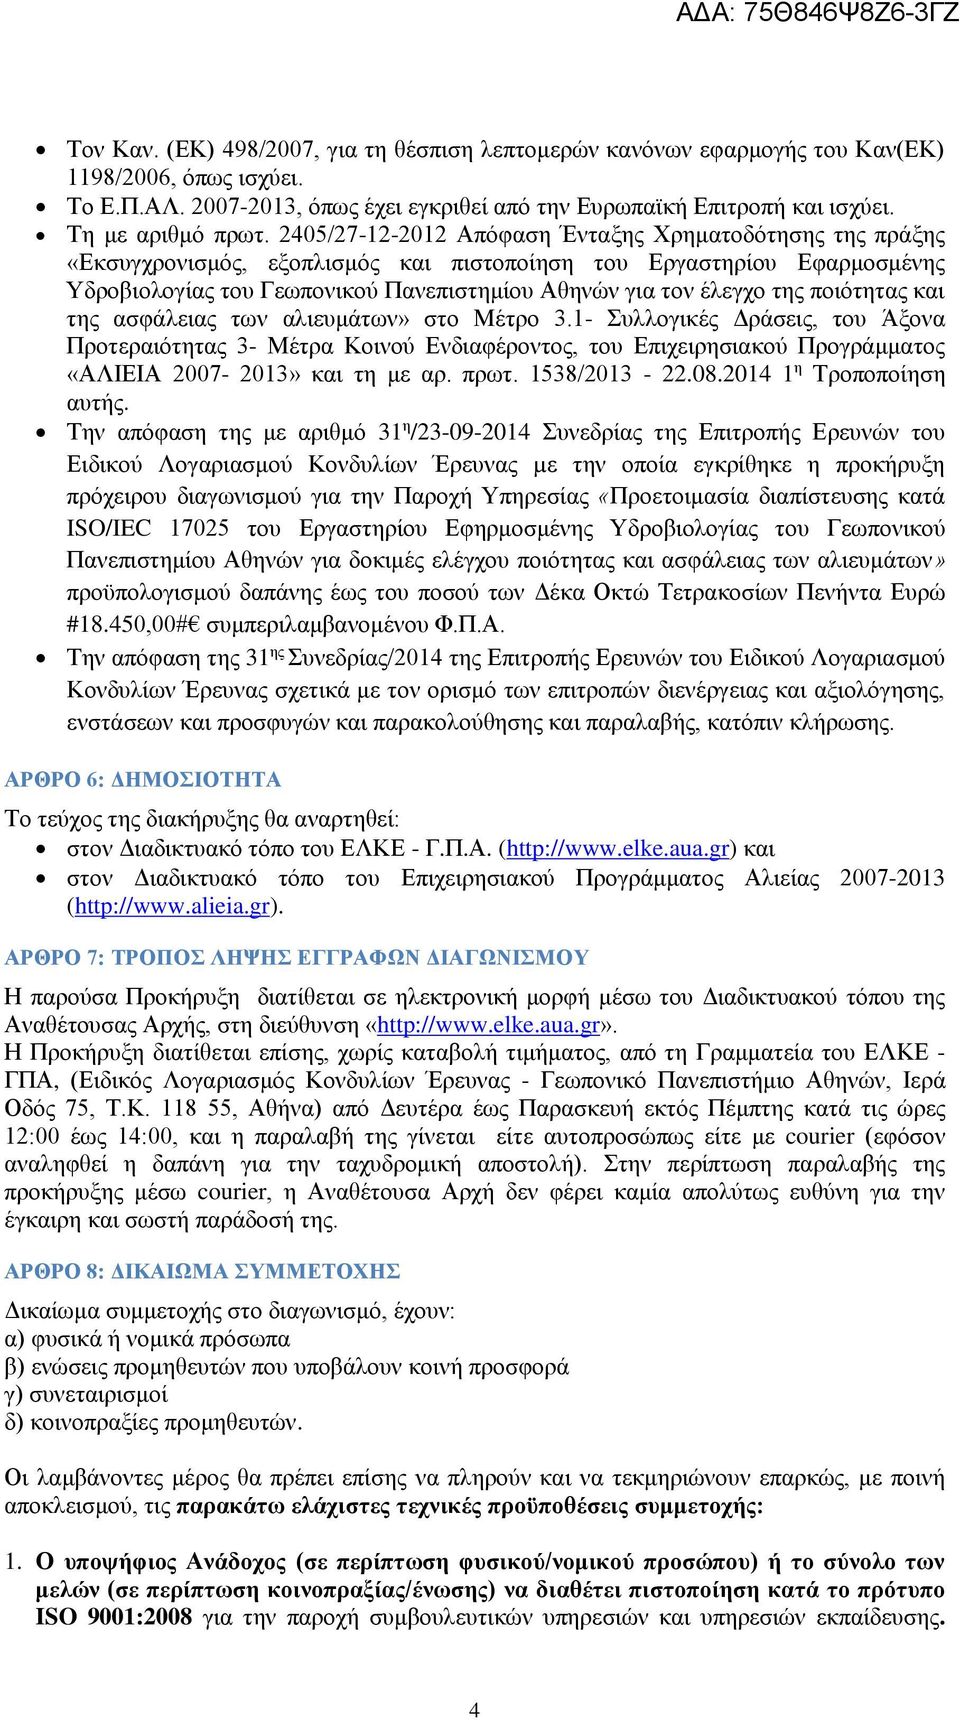 2405/27-12-2012 Απόφαση Ένταξης Χρηματοδότησης της πράξης «Εκσυγχρονισμός, εξοπλισμός και πιστοποίηση του Εργαστηρίου Εφαρμοσμένης Υδροβιολογίας του Γεωπονικού Πανεπιστημίου Αθηνών για τον έλεγχο της